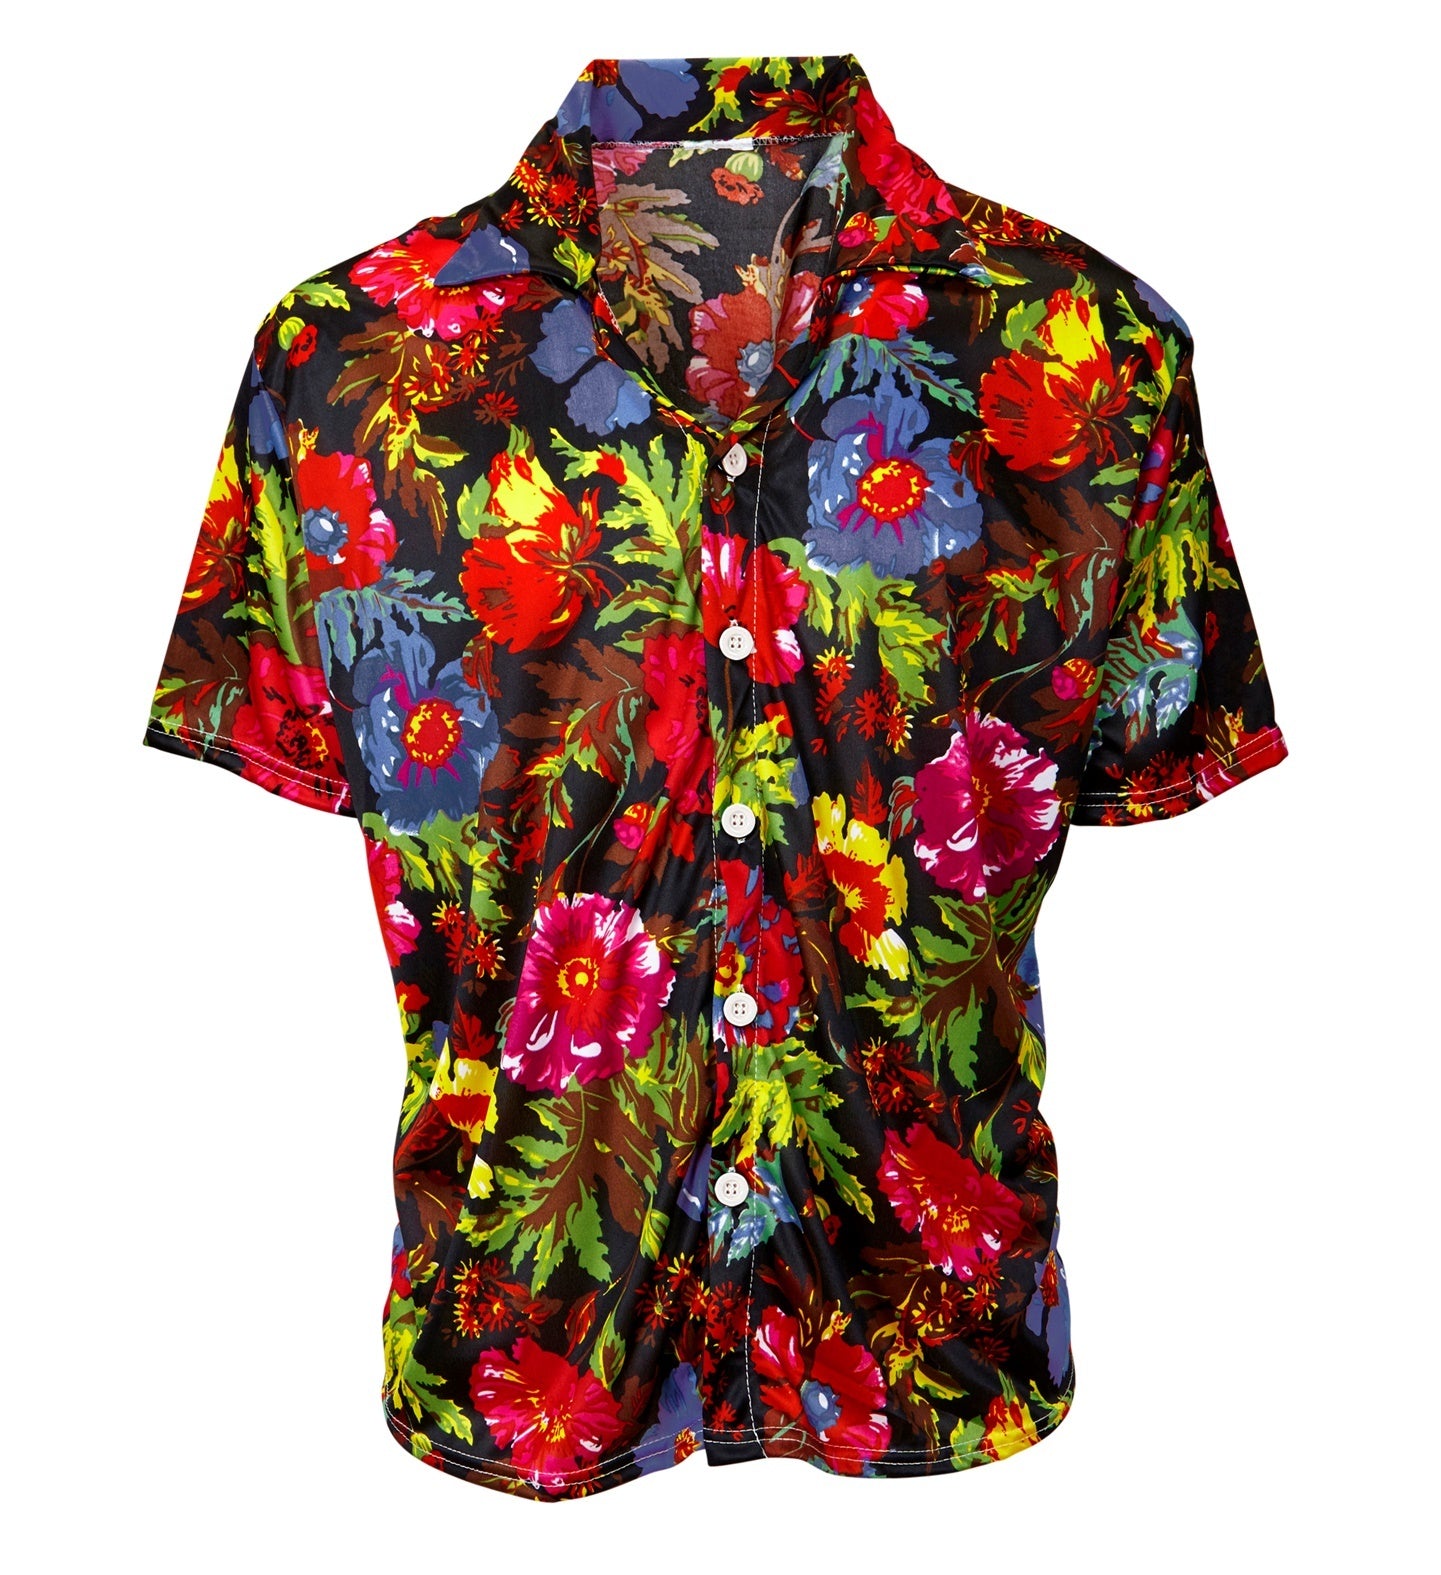 Widmann - Hawaii & Carribean & Tropisch Kostuum - Hawaii Shirt Tropische Floral Island Man - zwart,multicolor - Medium / Large - Carnavalskleding - Verkleedkleding